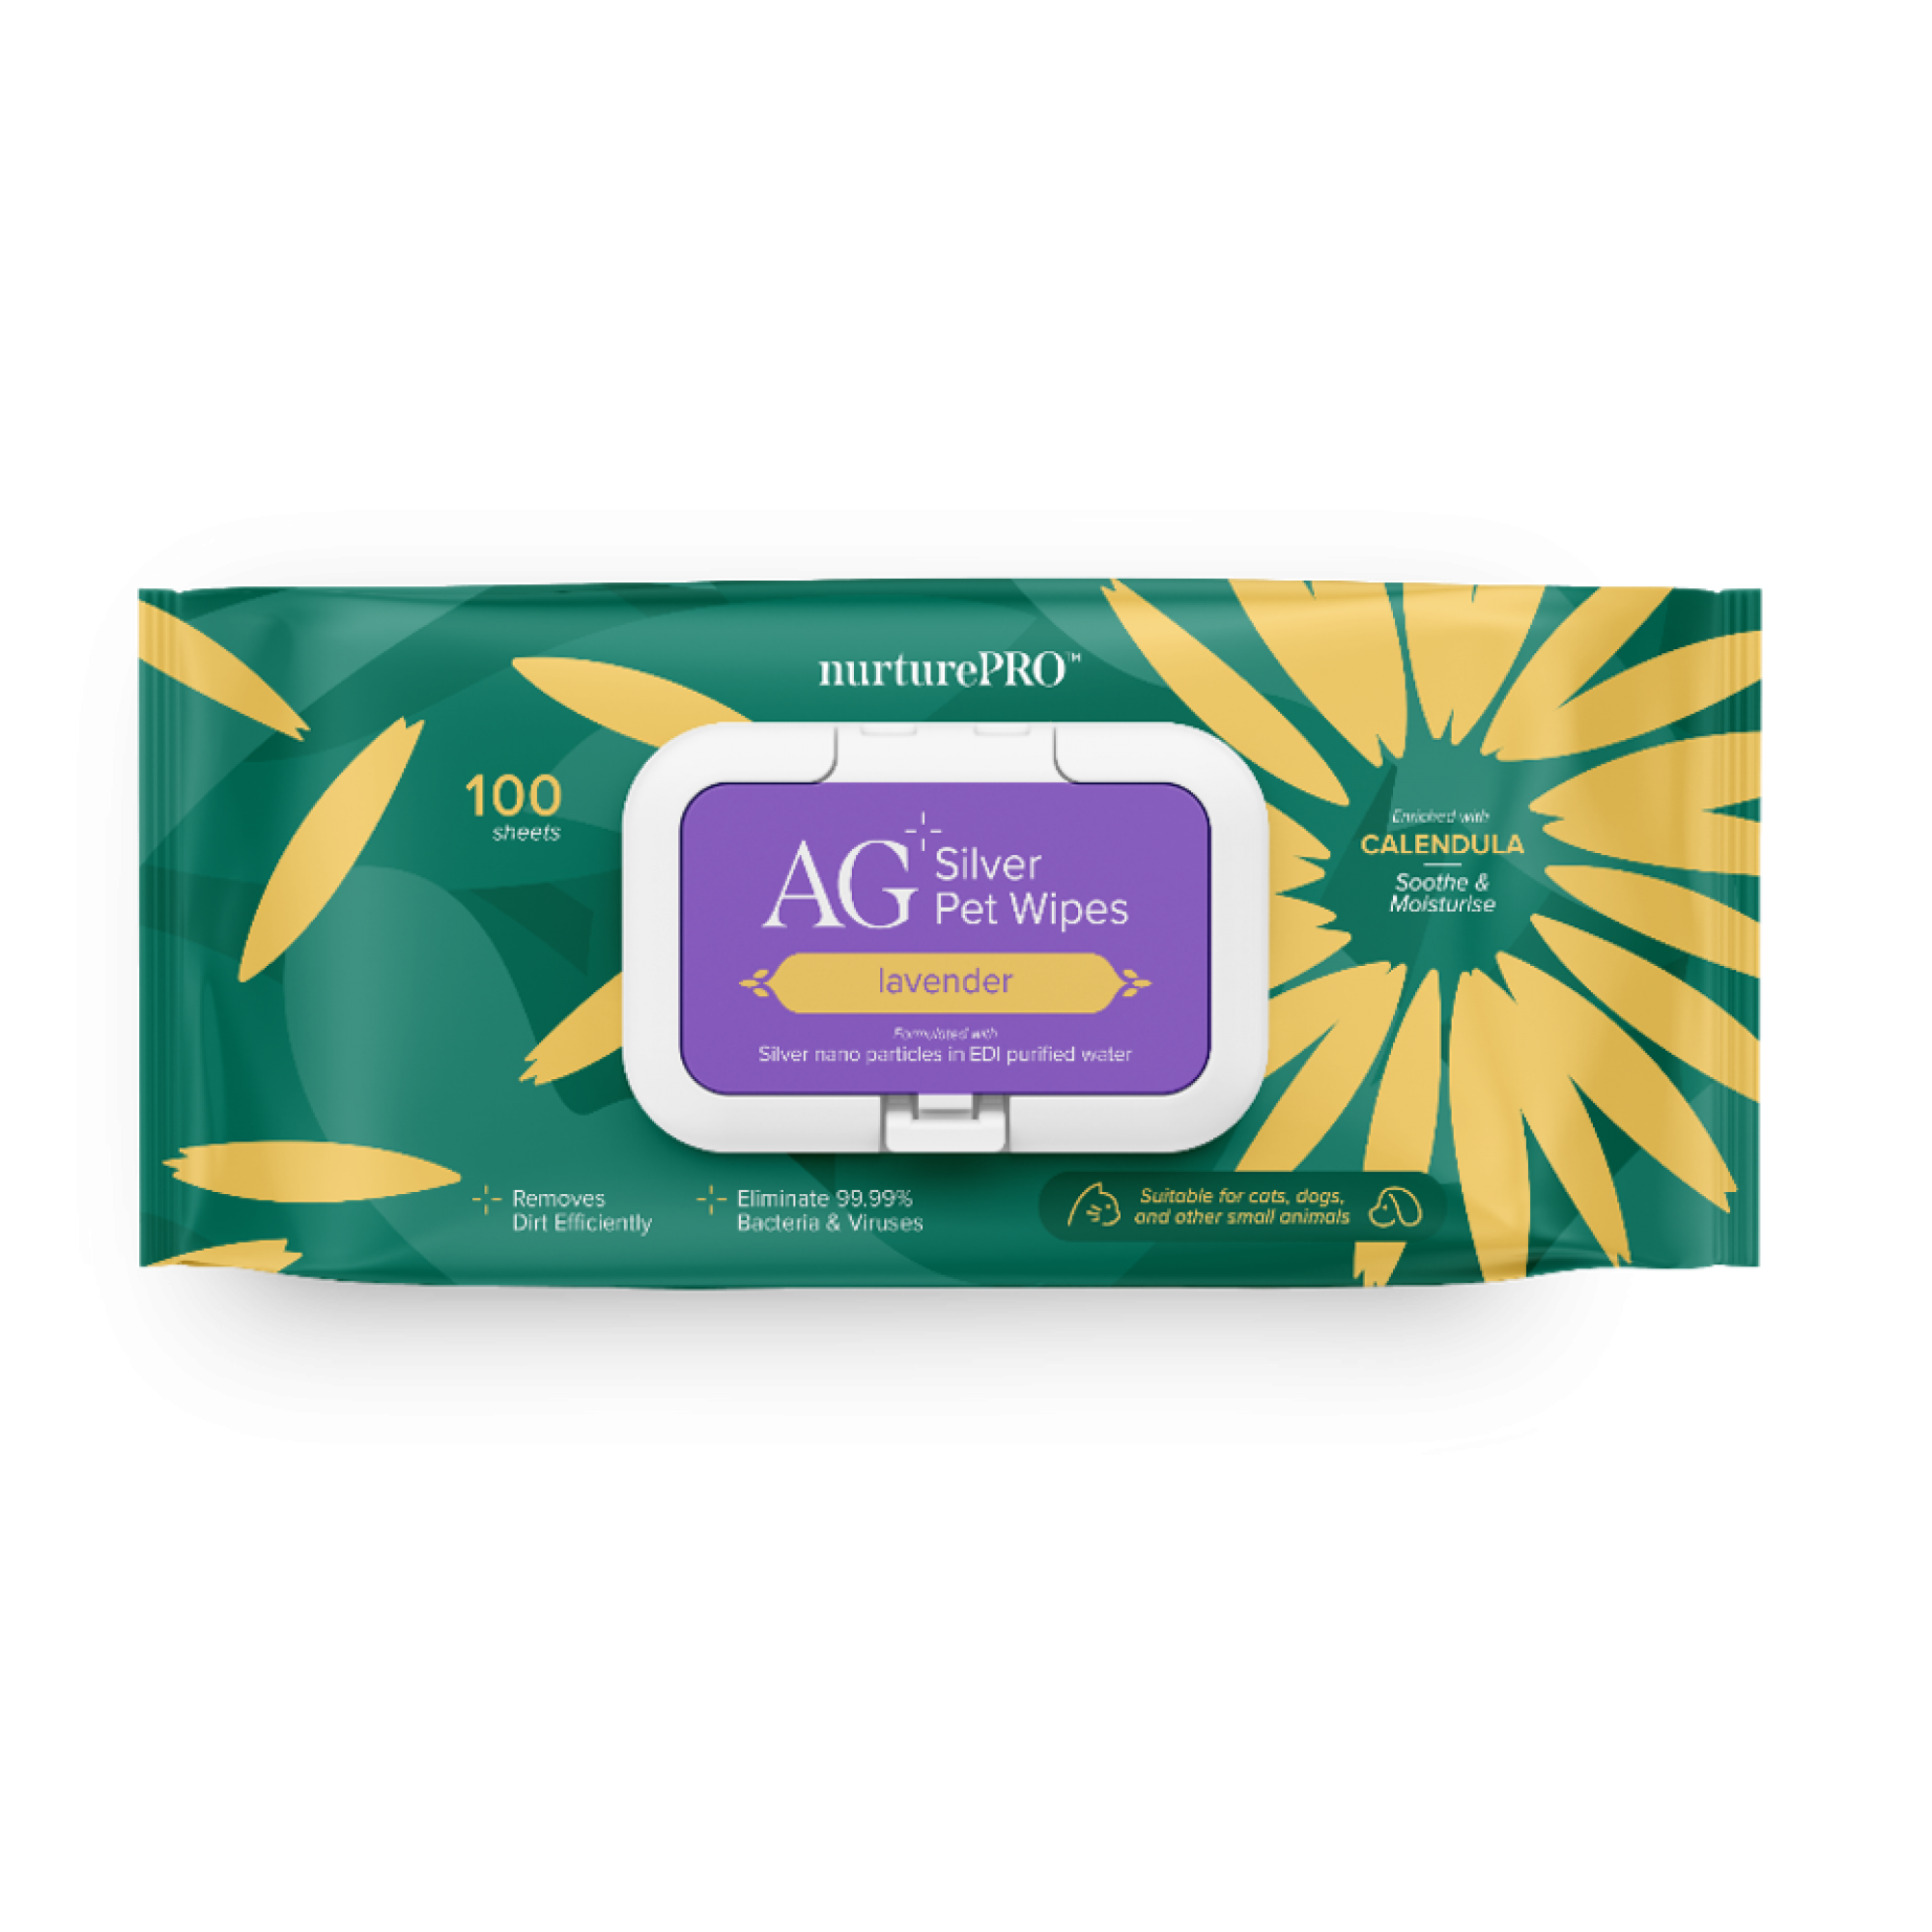 Nurture Pro - AG+Silver Pet Wipes 100pcs (Lavender)